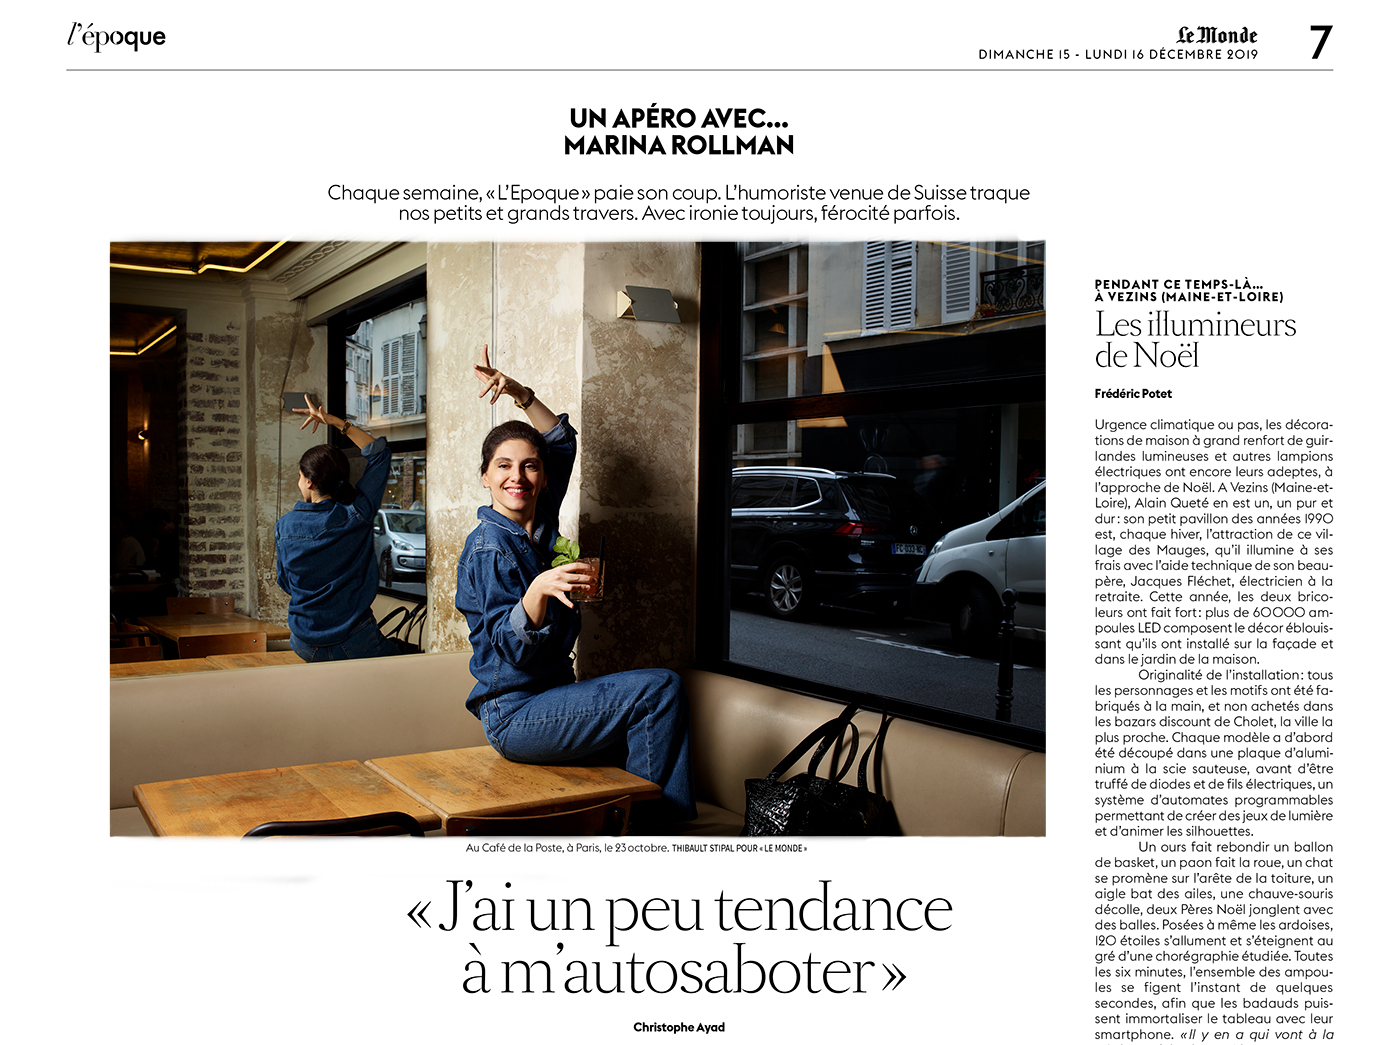 Thibault Stipal - Photographer - Le Monde - 1